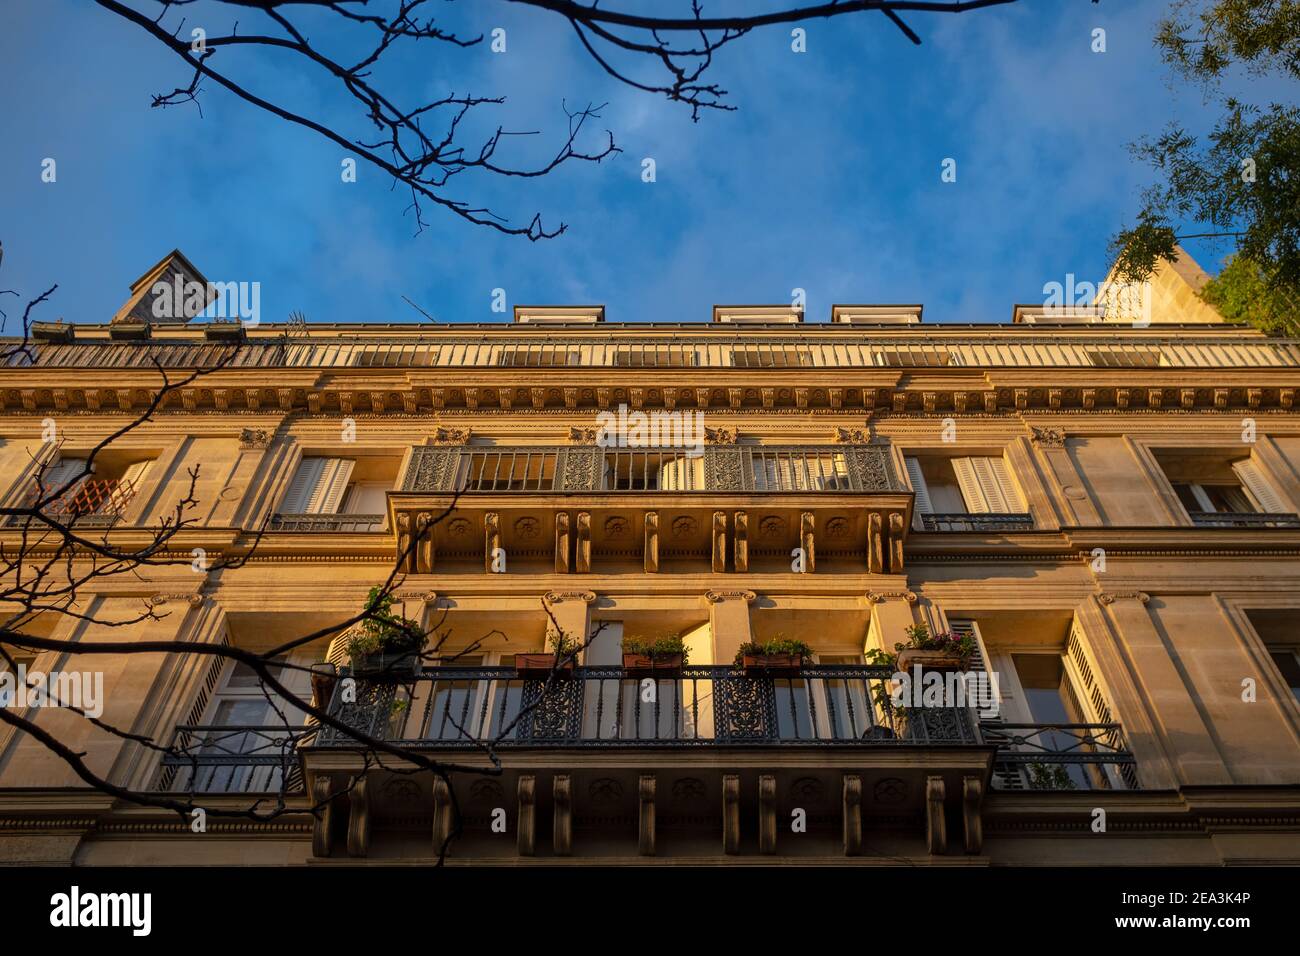 Photo prise à Paris d'une perspective symétrique d'une façade alyelyâtre haussmannienne vue d'en dessous. Banque D'Images